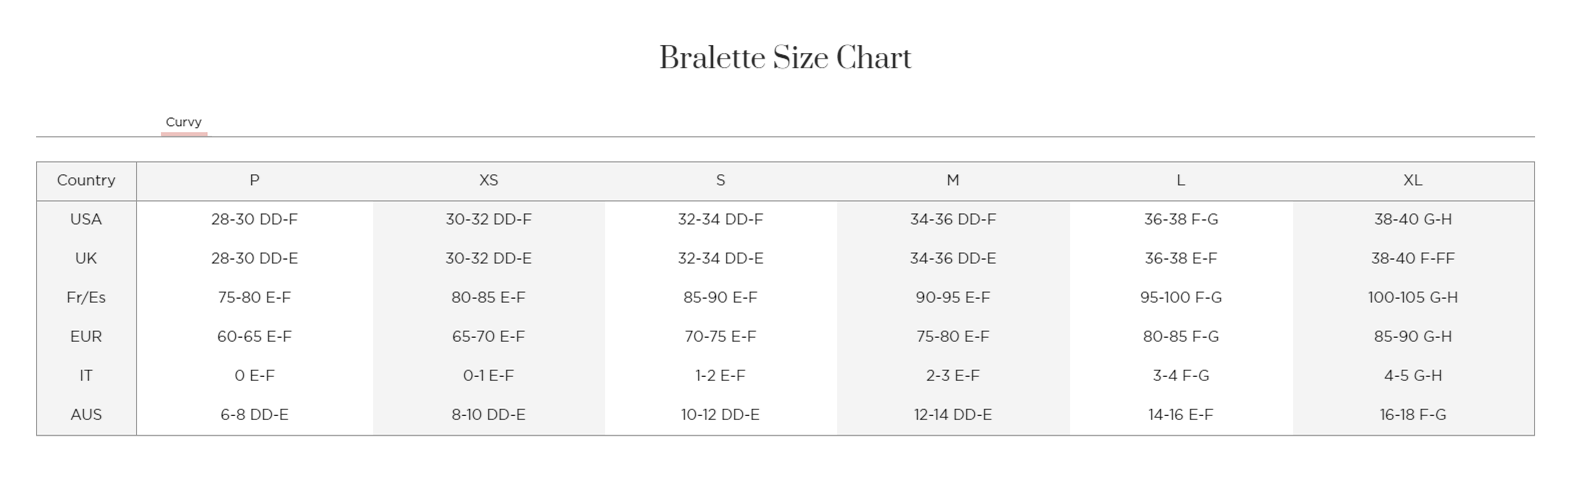 curvy-sweetie-bralette-size-chart